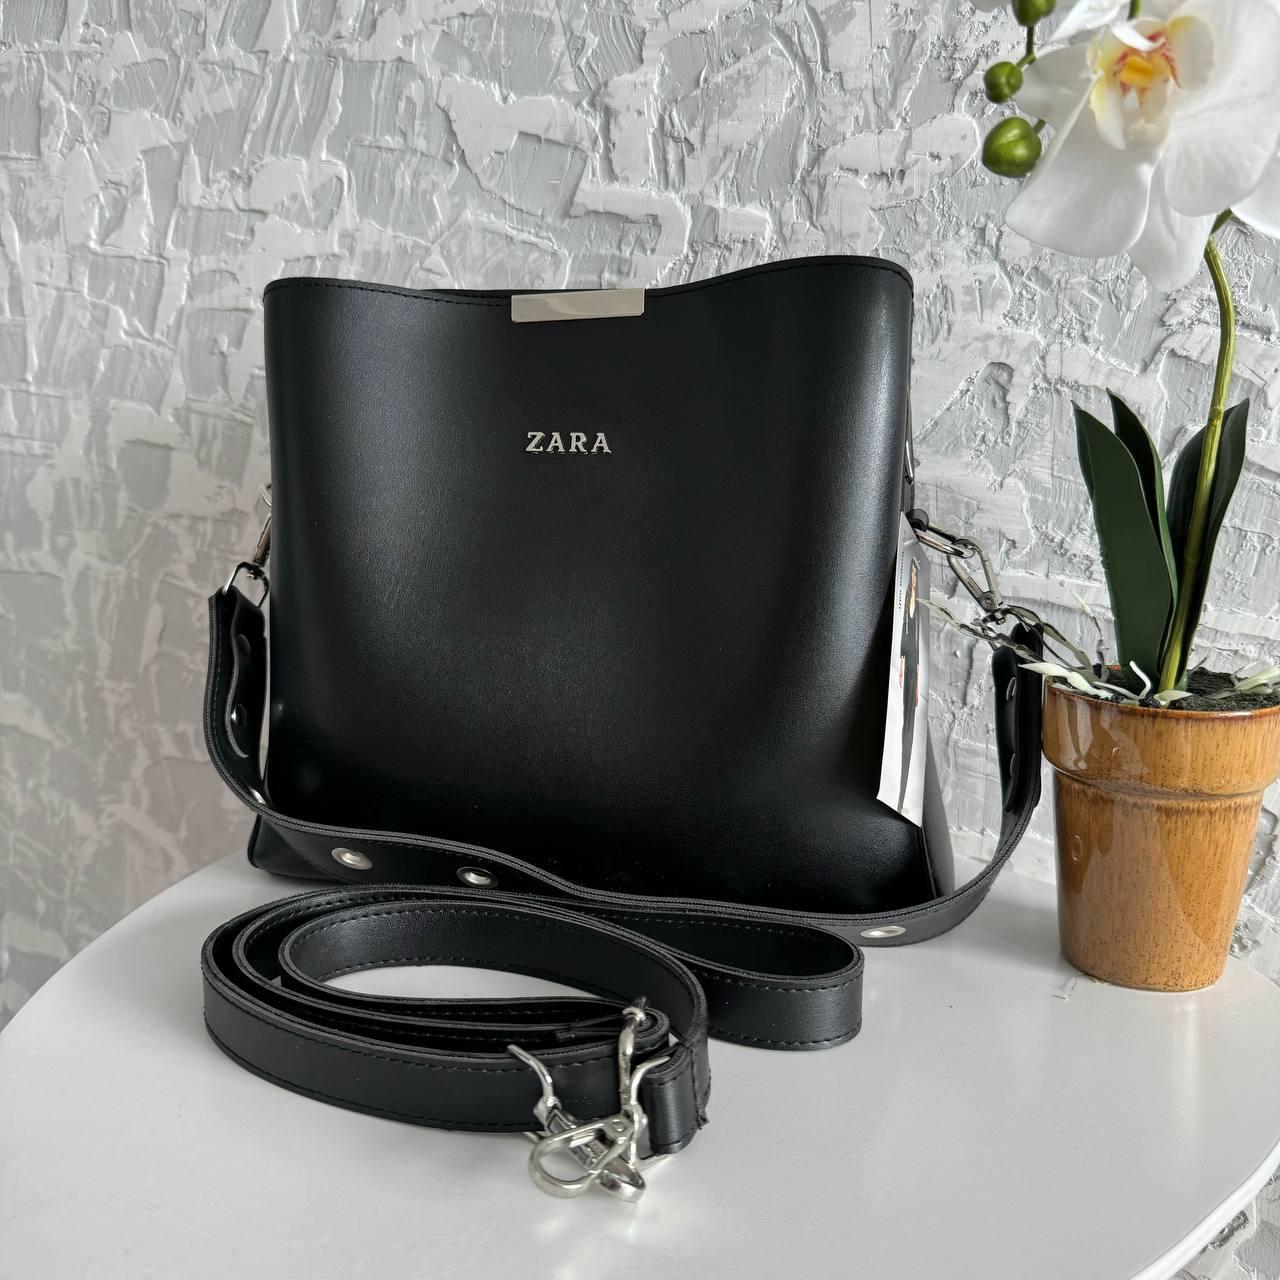 Жіноча сумка стиль Zara на плече, сумочка Зара чорна еко шкіра люкс якість